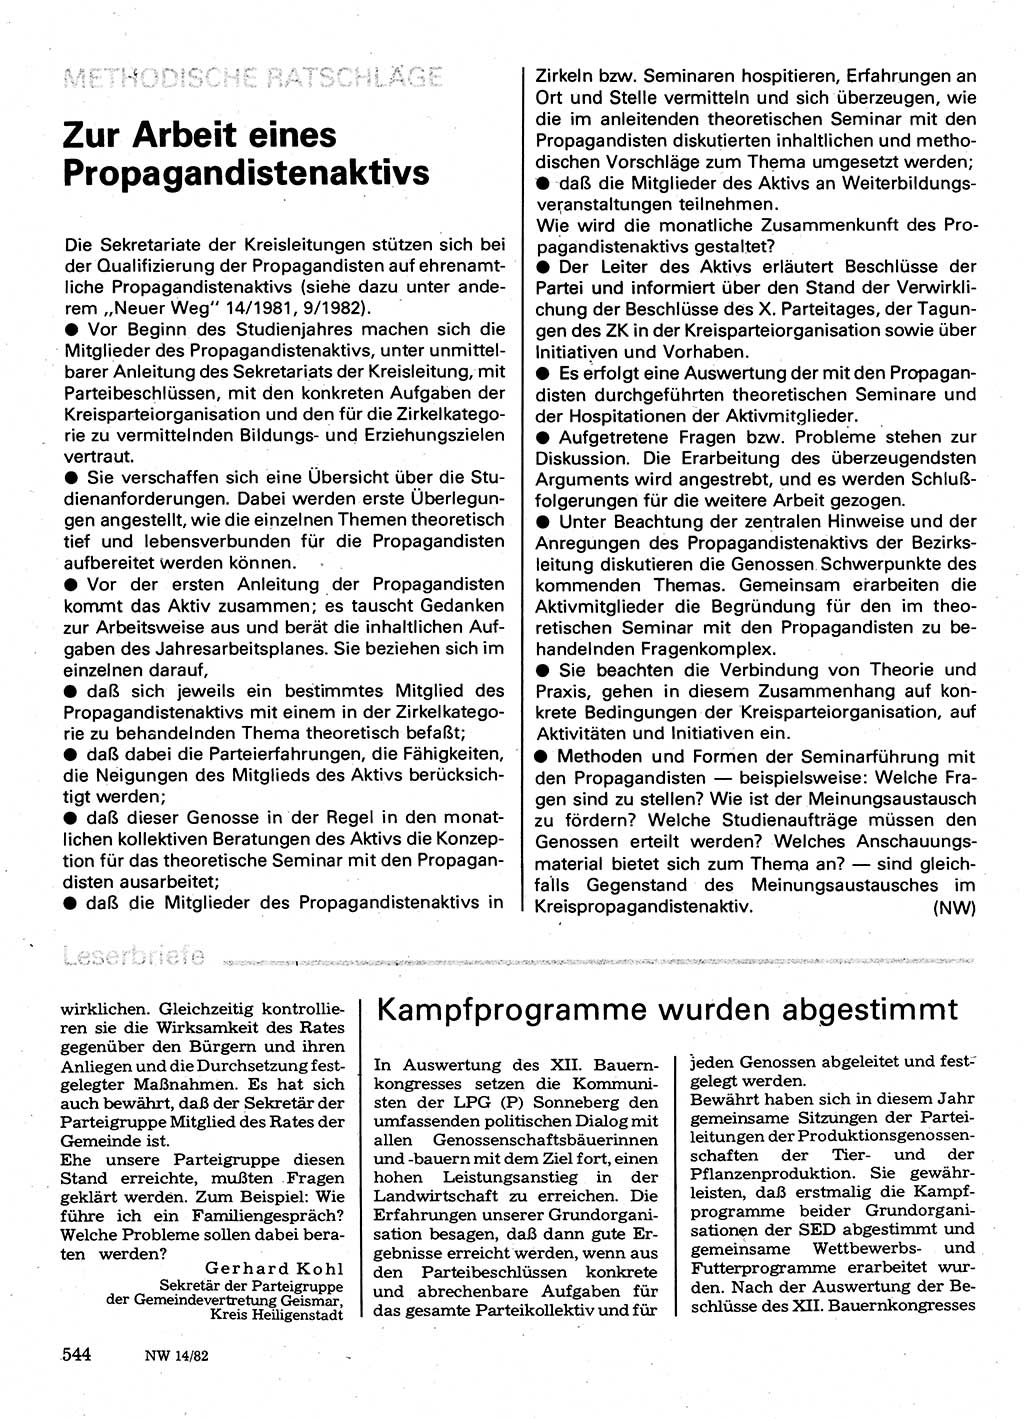 Neuer Weg (NW), Organ des Zentralkomitees (ZK) der SED (Sozialistische Einheitspartei Deutschlands) für Fragen des Parteilebens, 37. Jahrgang [Deutsche Demokratische Republik (DDR)] 1982, Seite 544 (NW ZK SED DDR 1982, S. 544)